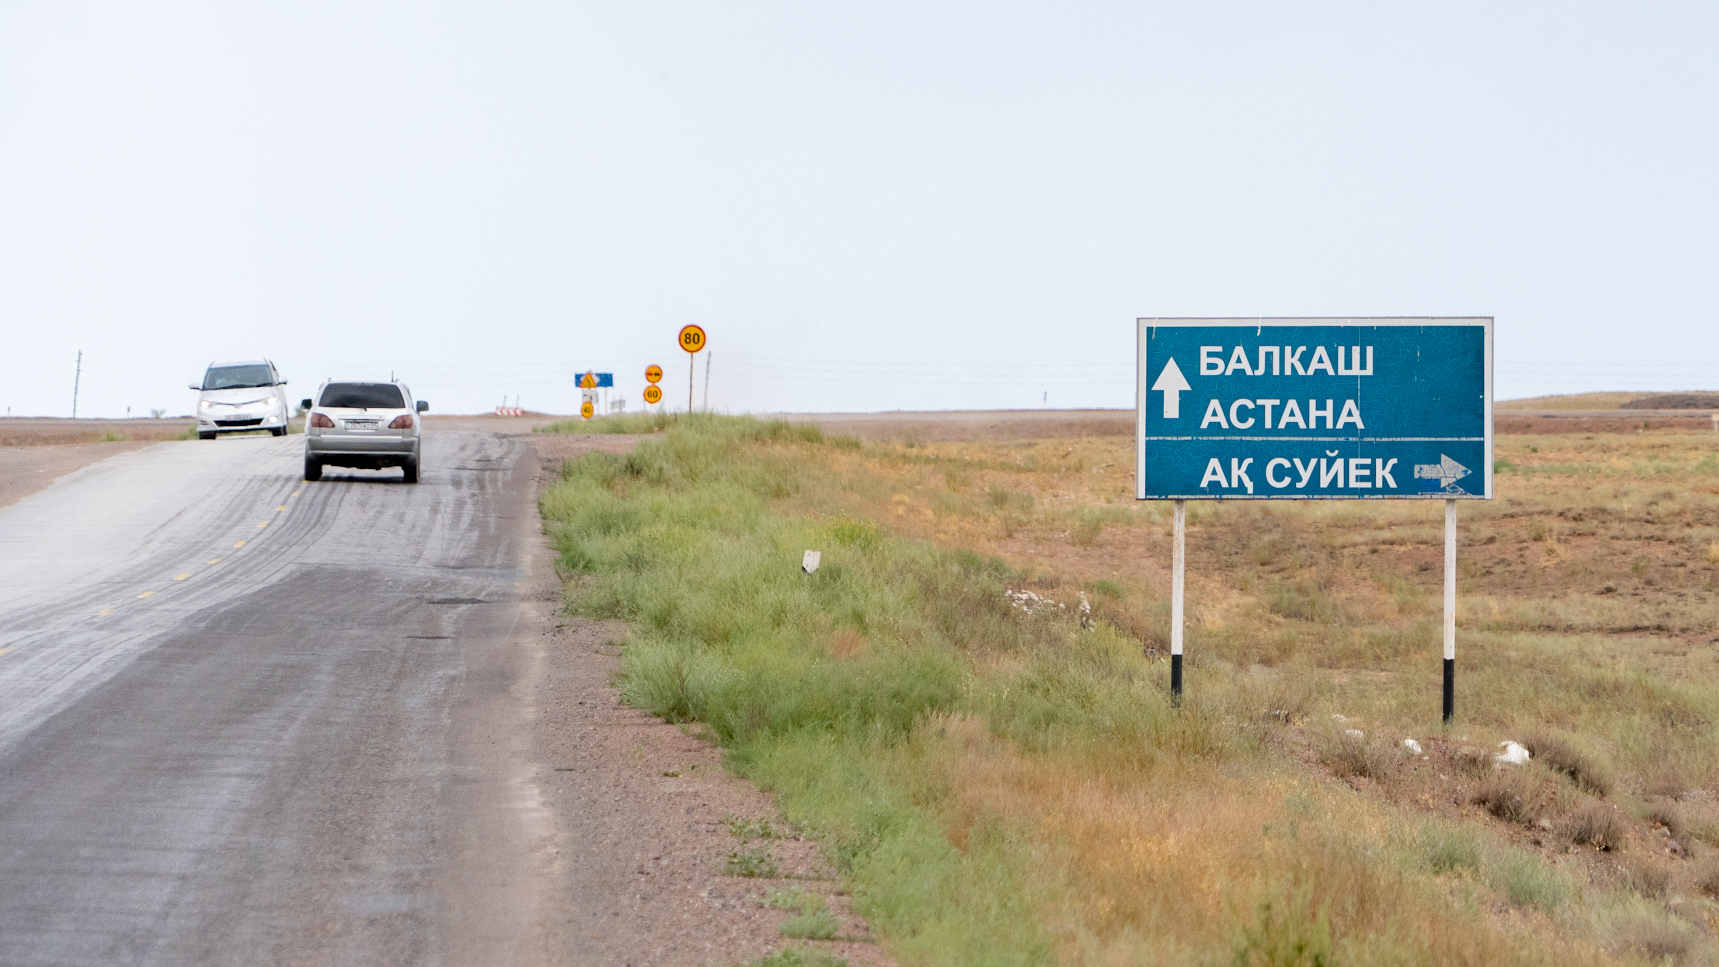 Как живет казахстанское село Аксуек, несколько десятилетий находившееся под грифом "секретно"